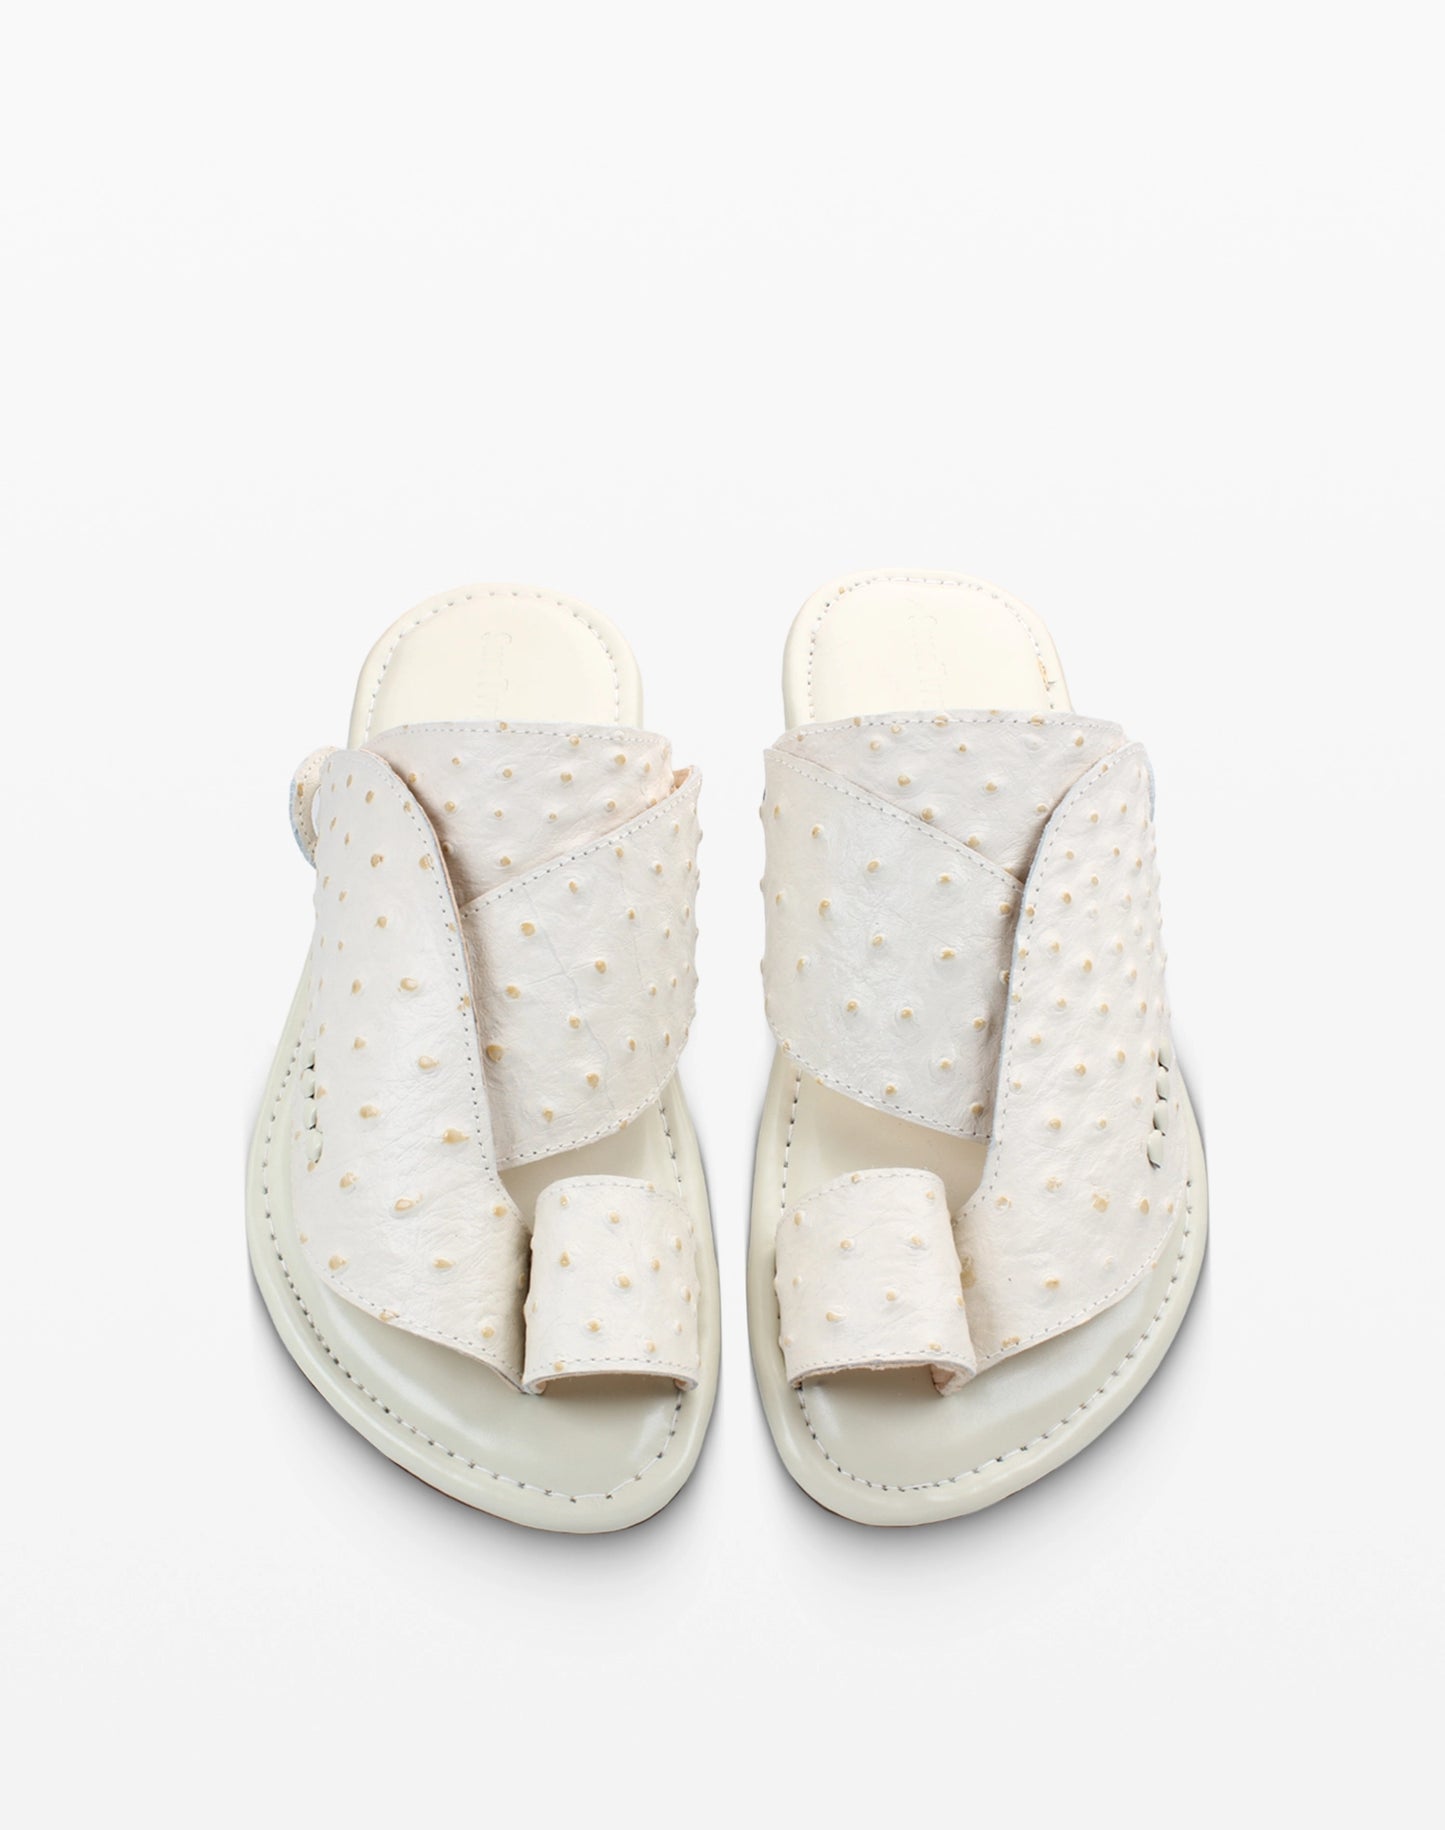 حذاء شرقي فلات جلد نعام أبيض - صورة امامية